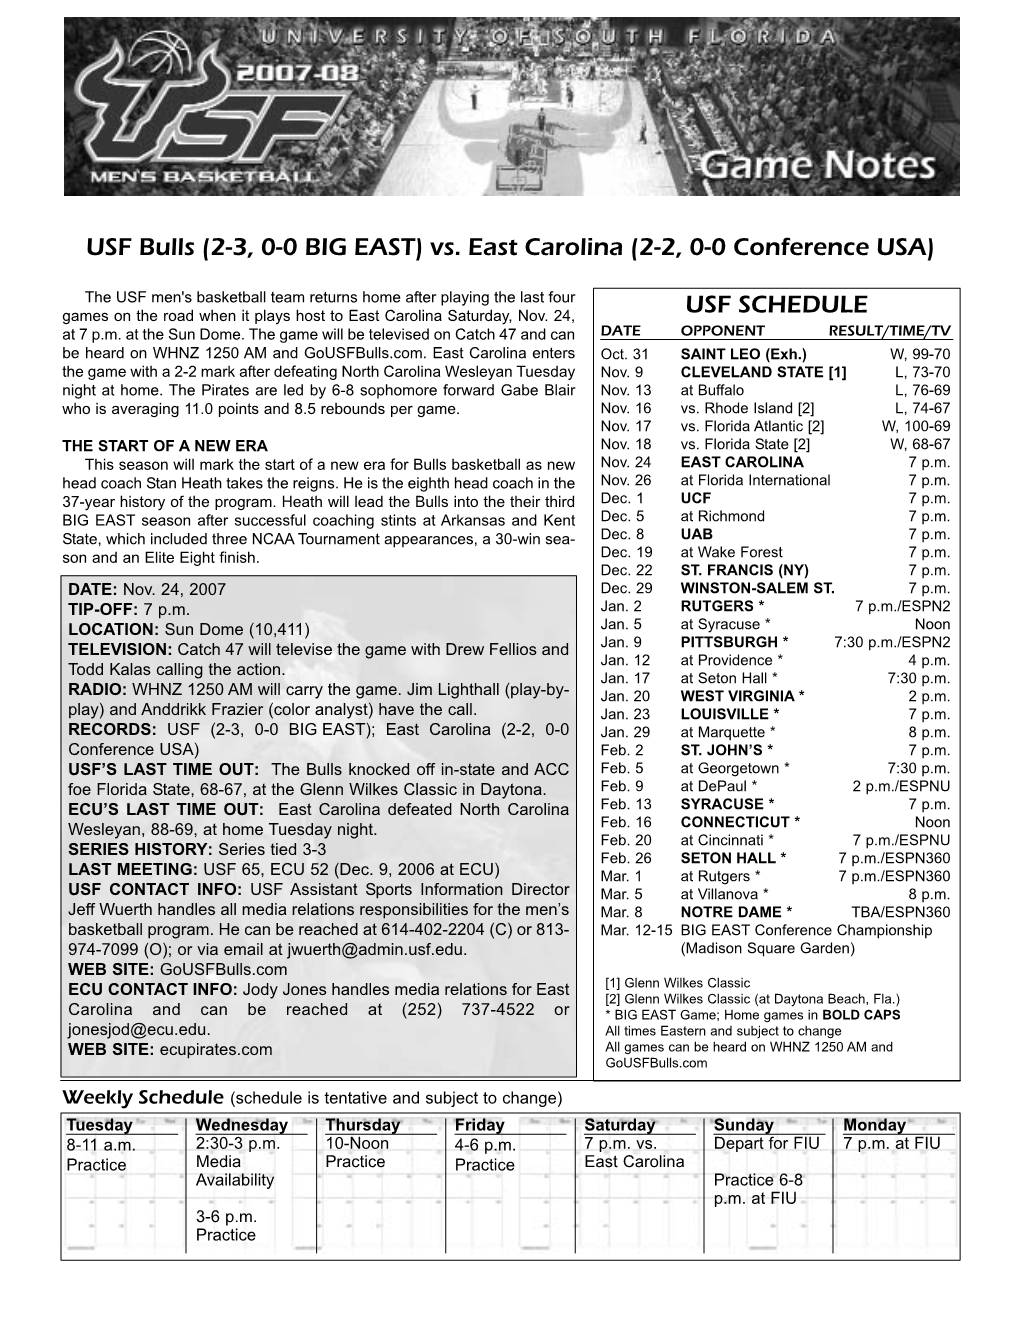 2007-08 MBB Notes